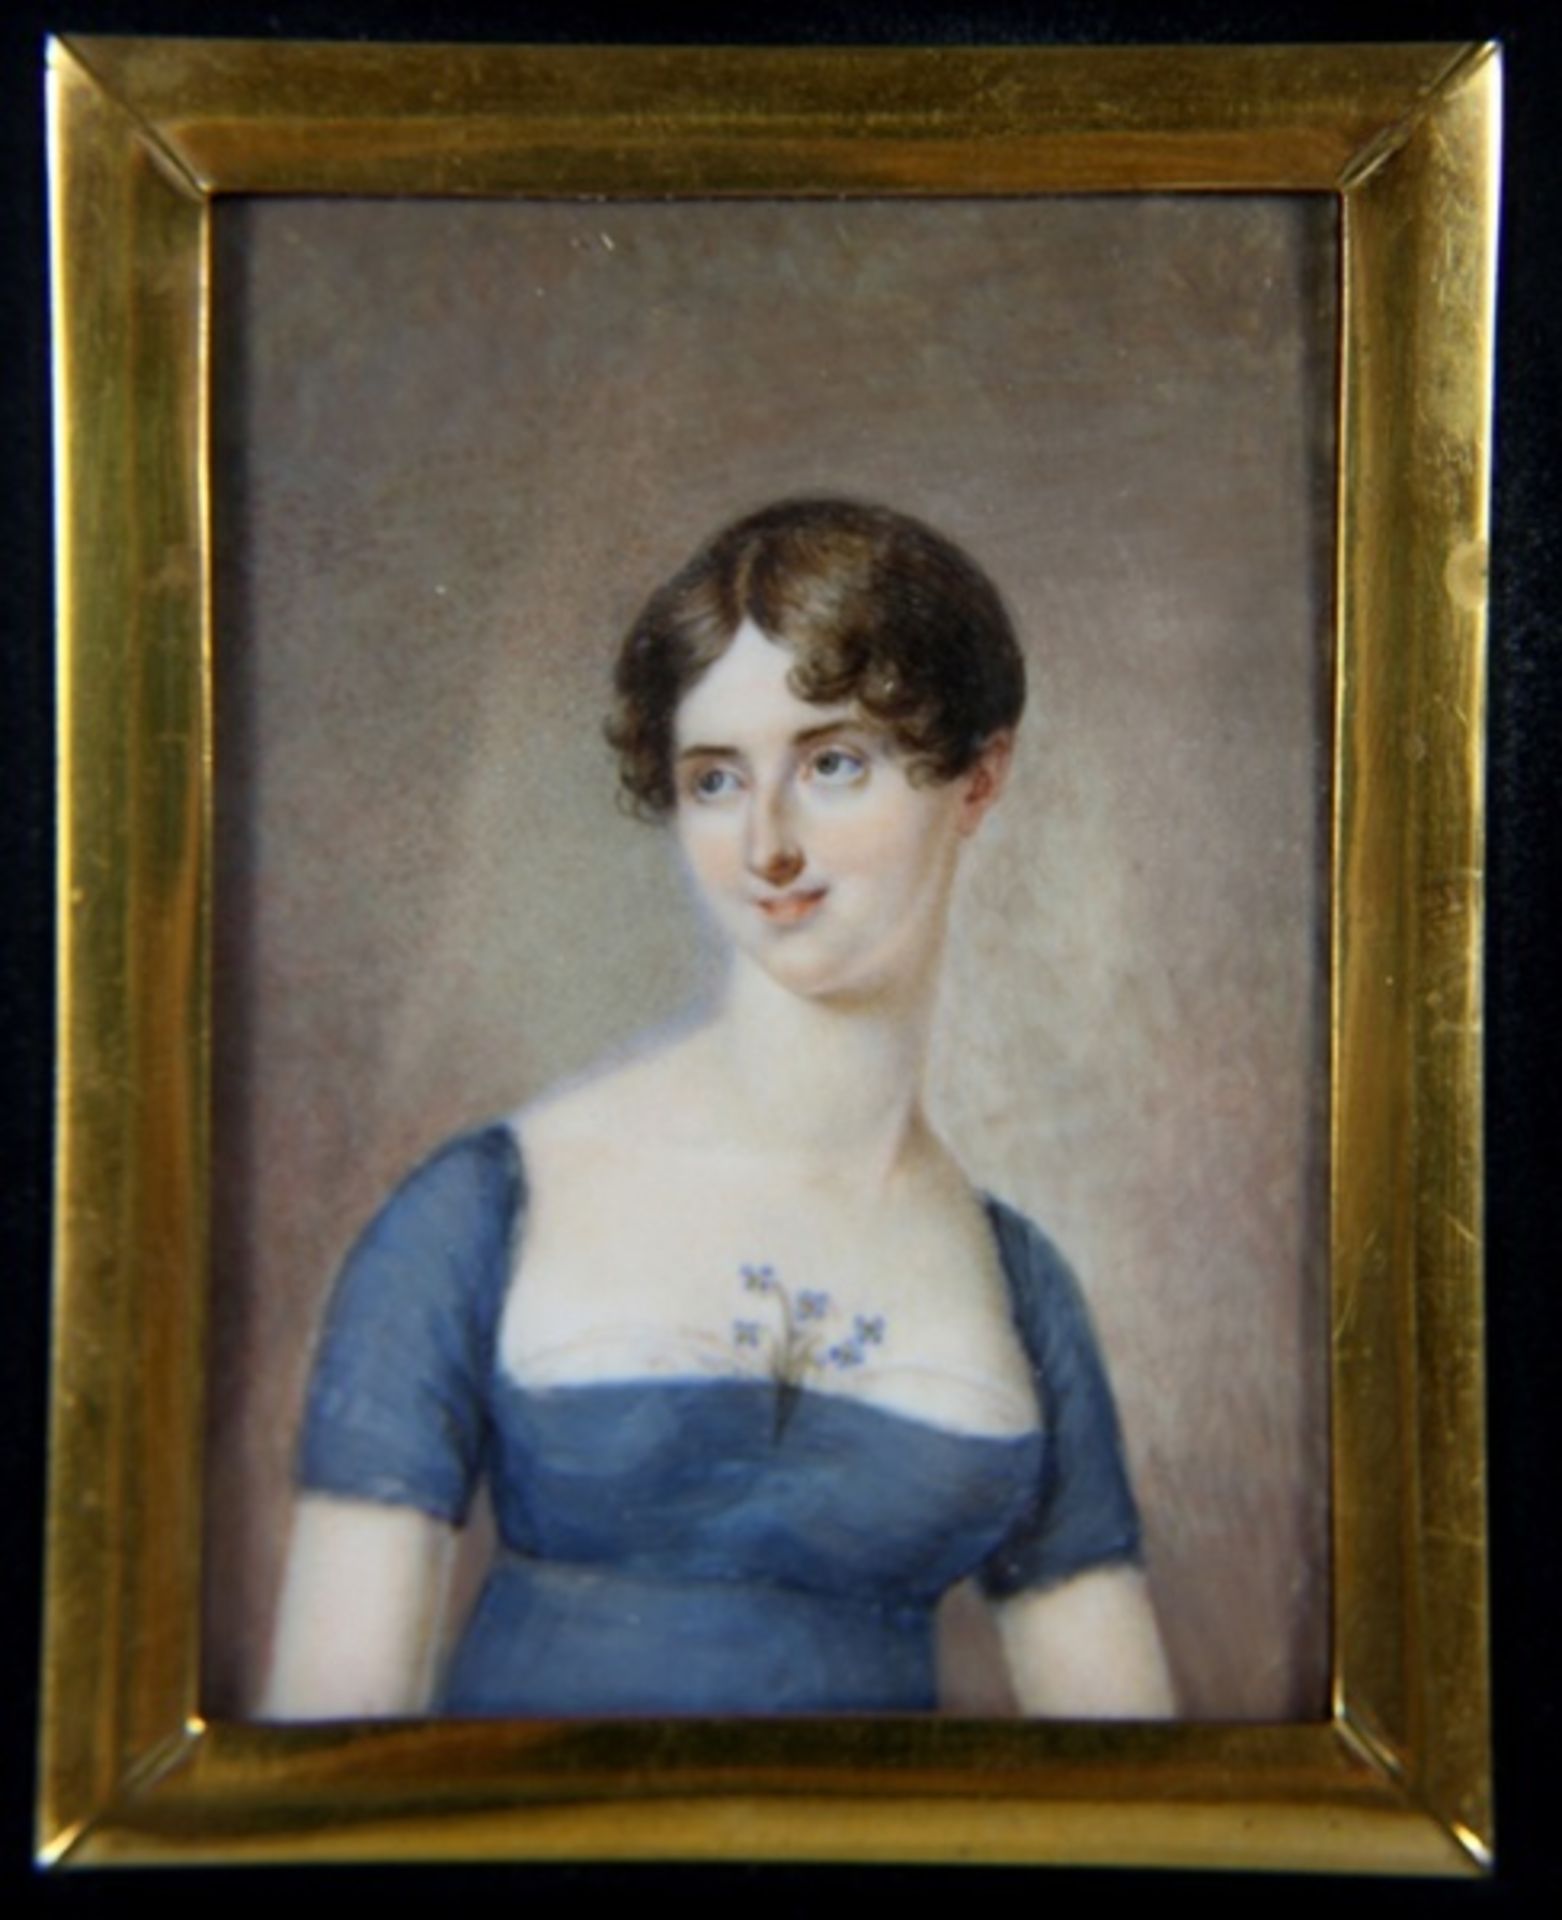 Miniatur19. Jhd., rechteckige Miniatur, Portrait einer jungen Frau, sie trägt ein blaues Kleid mit